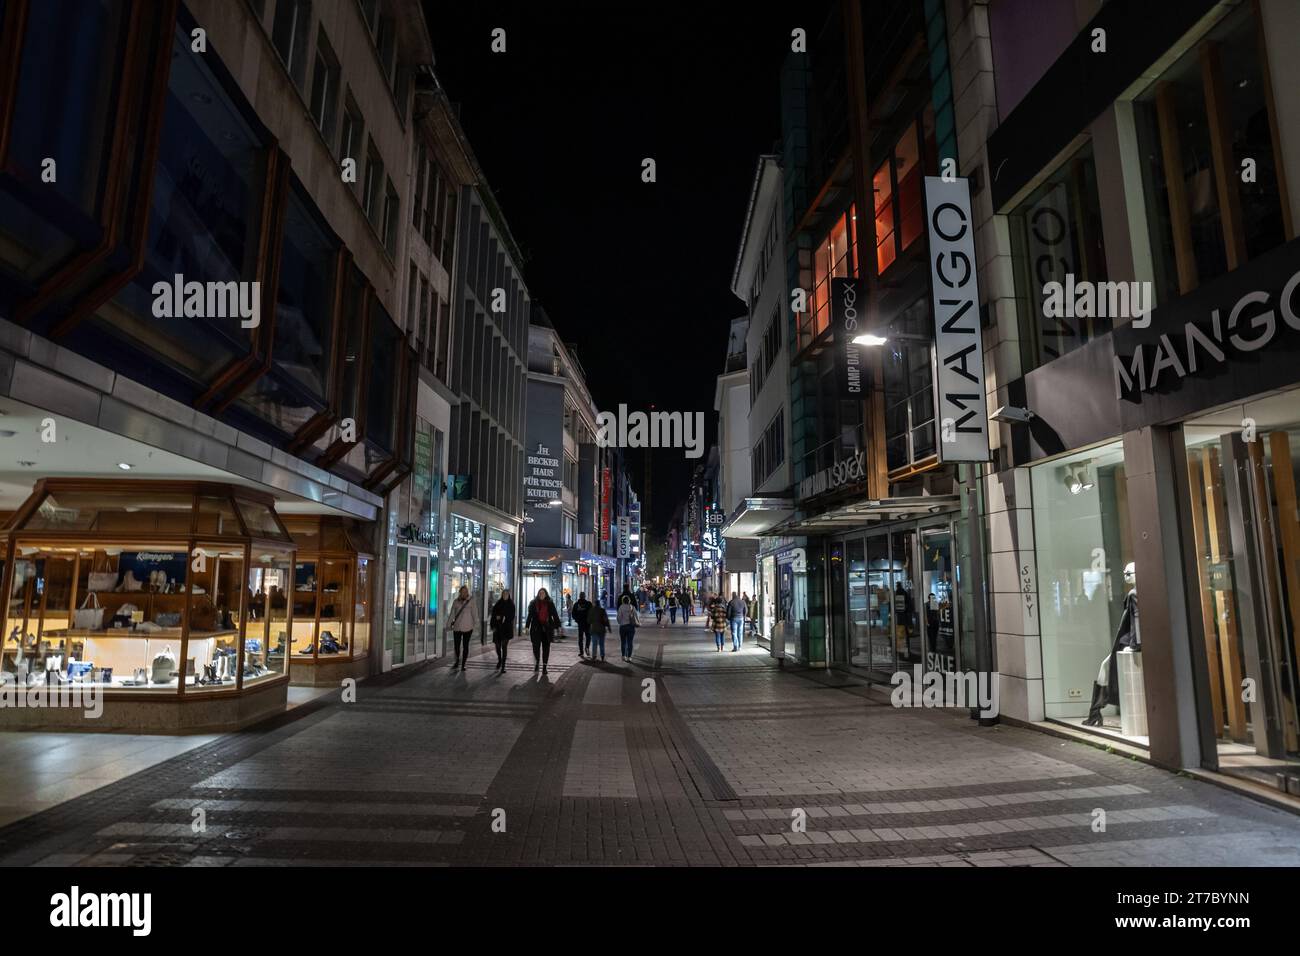 Foto di Hohe Strasse con negozi e negozi chiusi di notte a Colonia, Germania. Hohe Straße è una strada commerciale nel centro storico di Colonia, in Germania Foto Stock